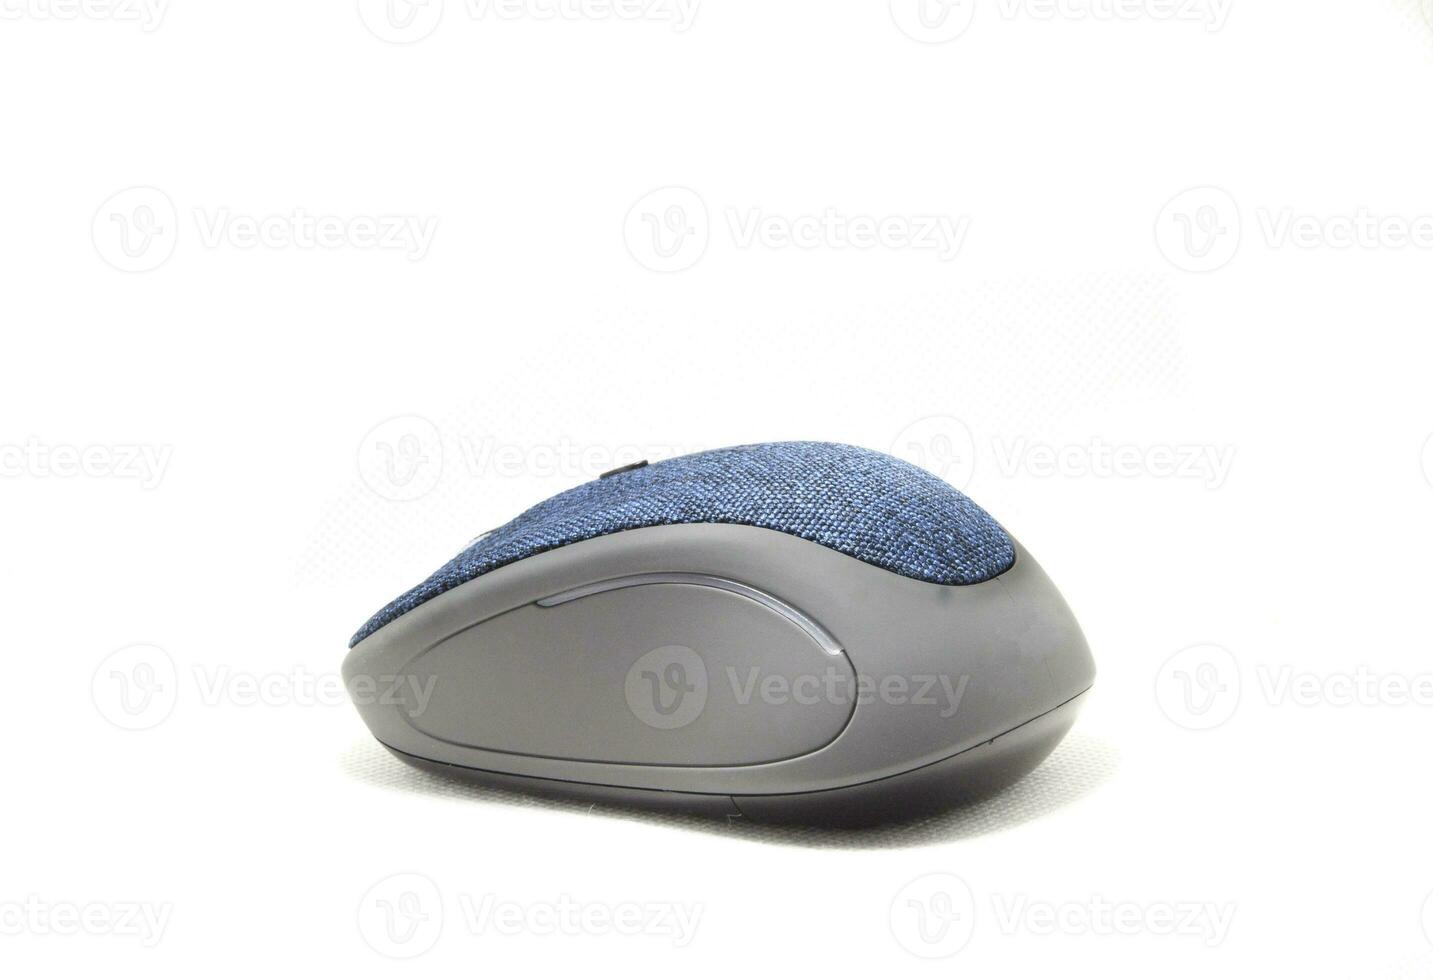 mouse de computador azul com um design moderno e ergonômico e ergonomia como um mouse sem fio em um fundo branco separado. foto